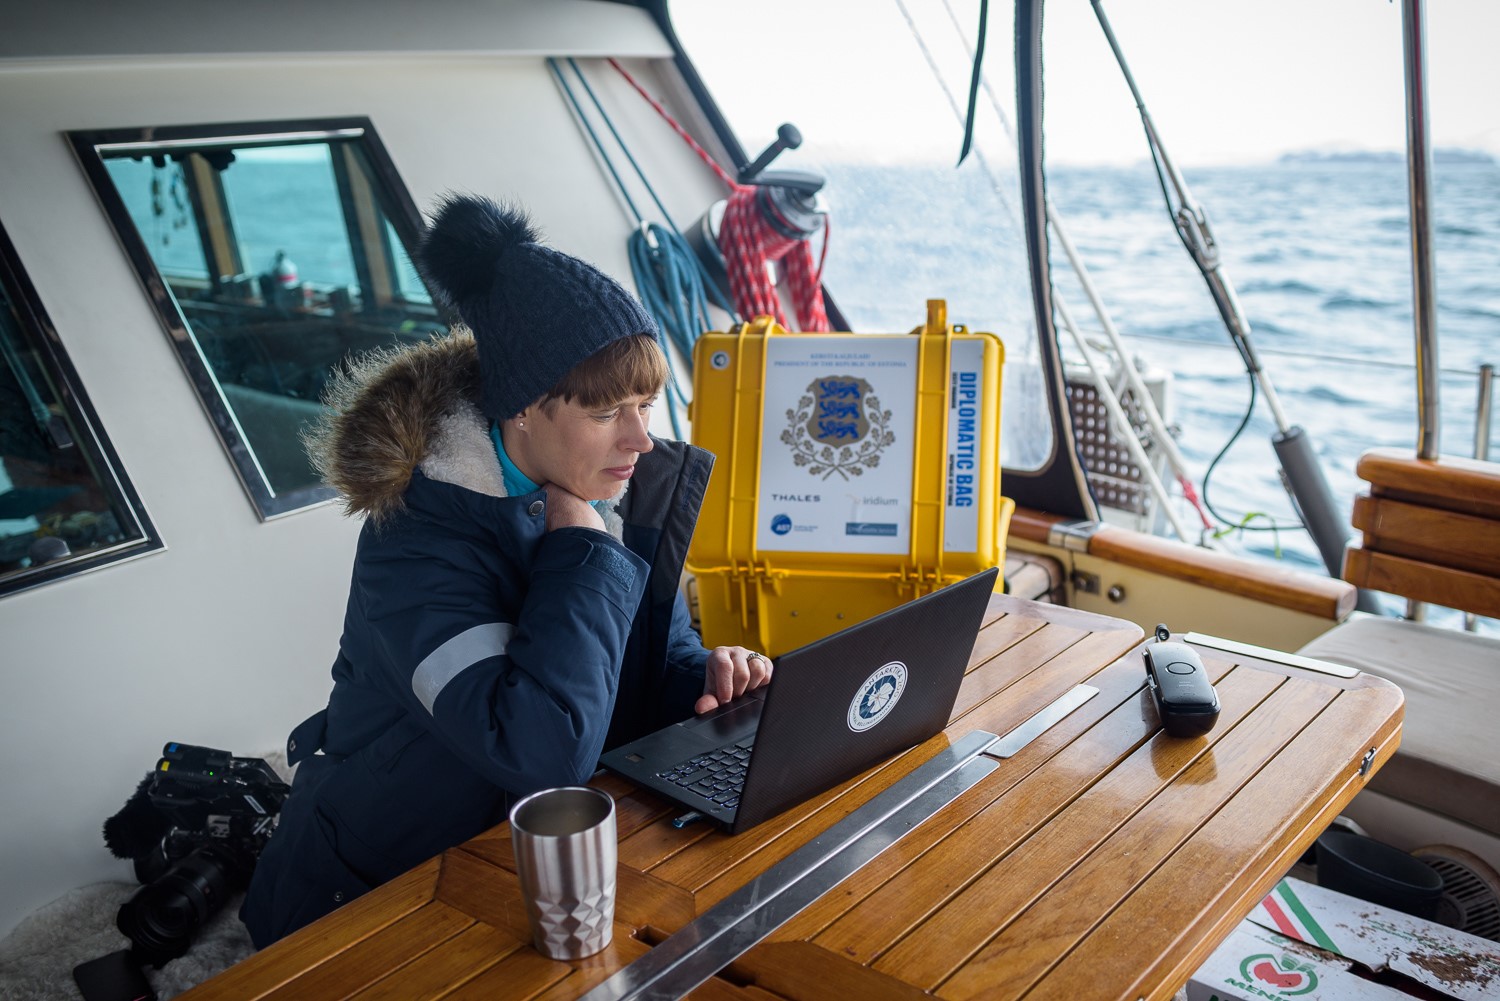 Riigipea allkirjastas teenetemärkide otsuse digitaalselt Antarktikas purjelaeva Admiral Bellingshausen pardal, kus ta on töövisiidil.